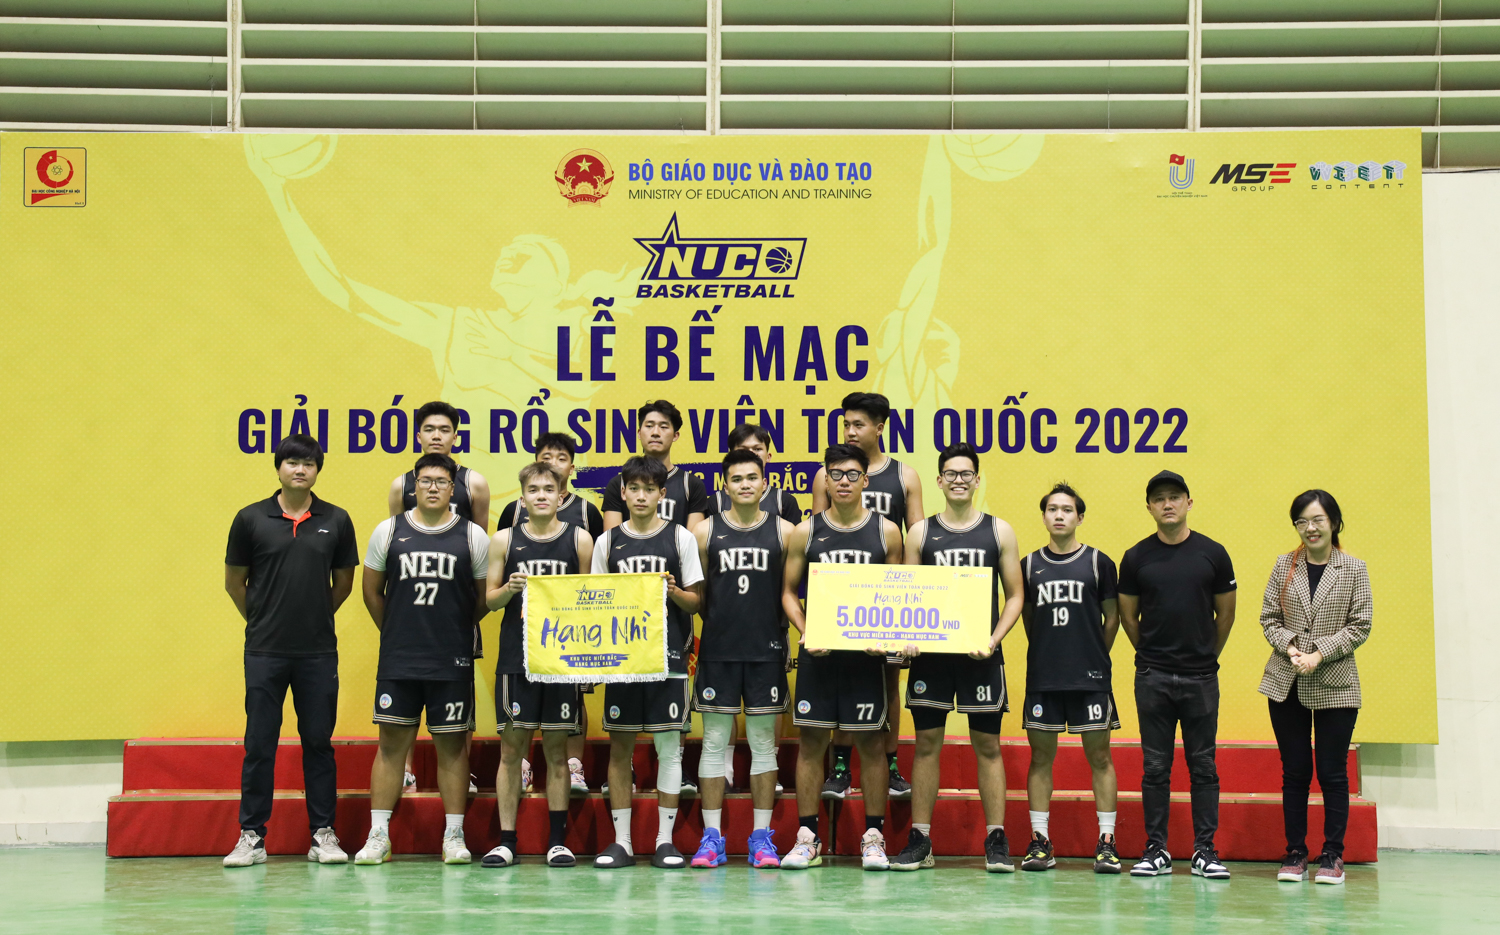 Bế mạc Giải bóng rổ sinh viên toàn quốc 2022 khu vực Miền Bắc